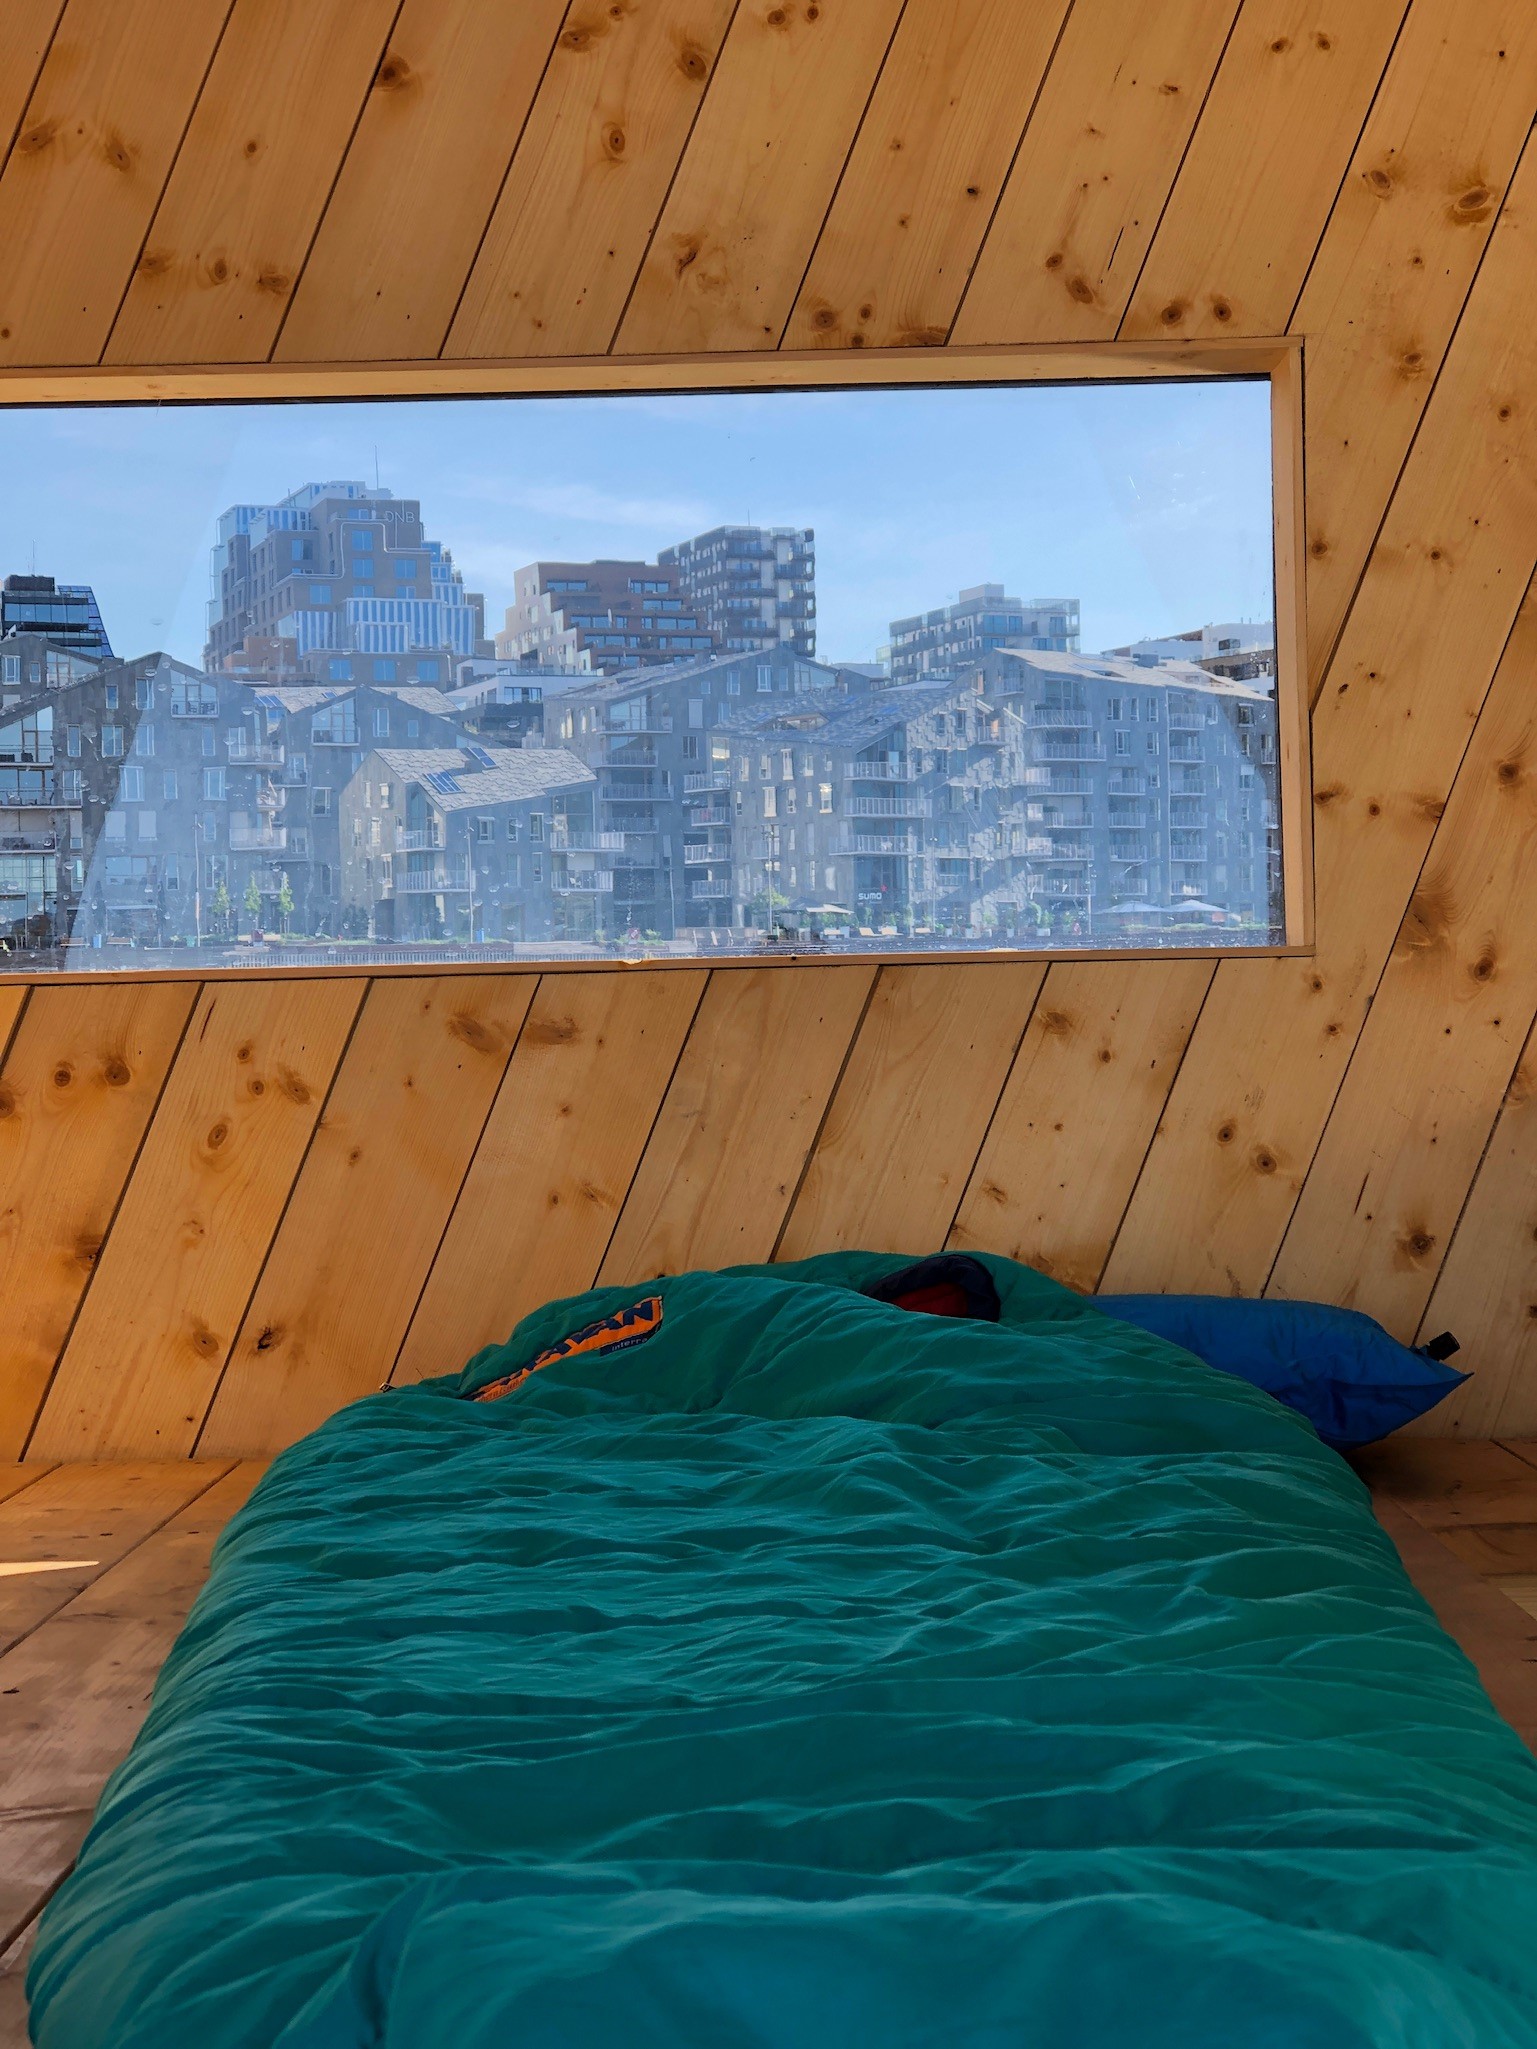 Fra innsiden av padlehuken ser man Oslo gjennom vinduet